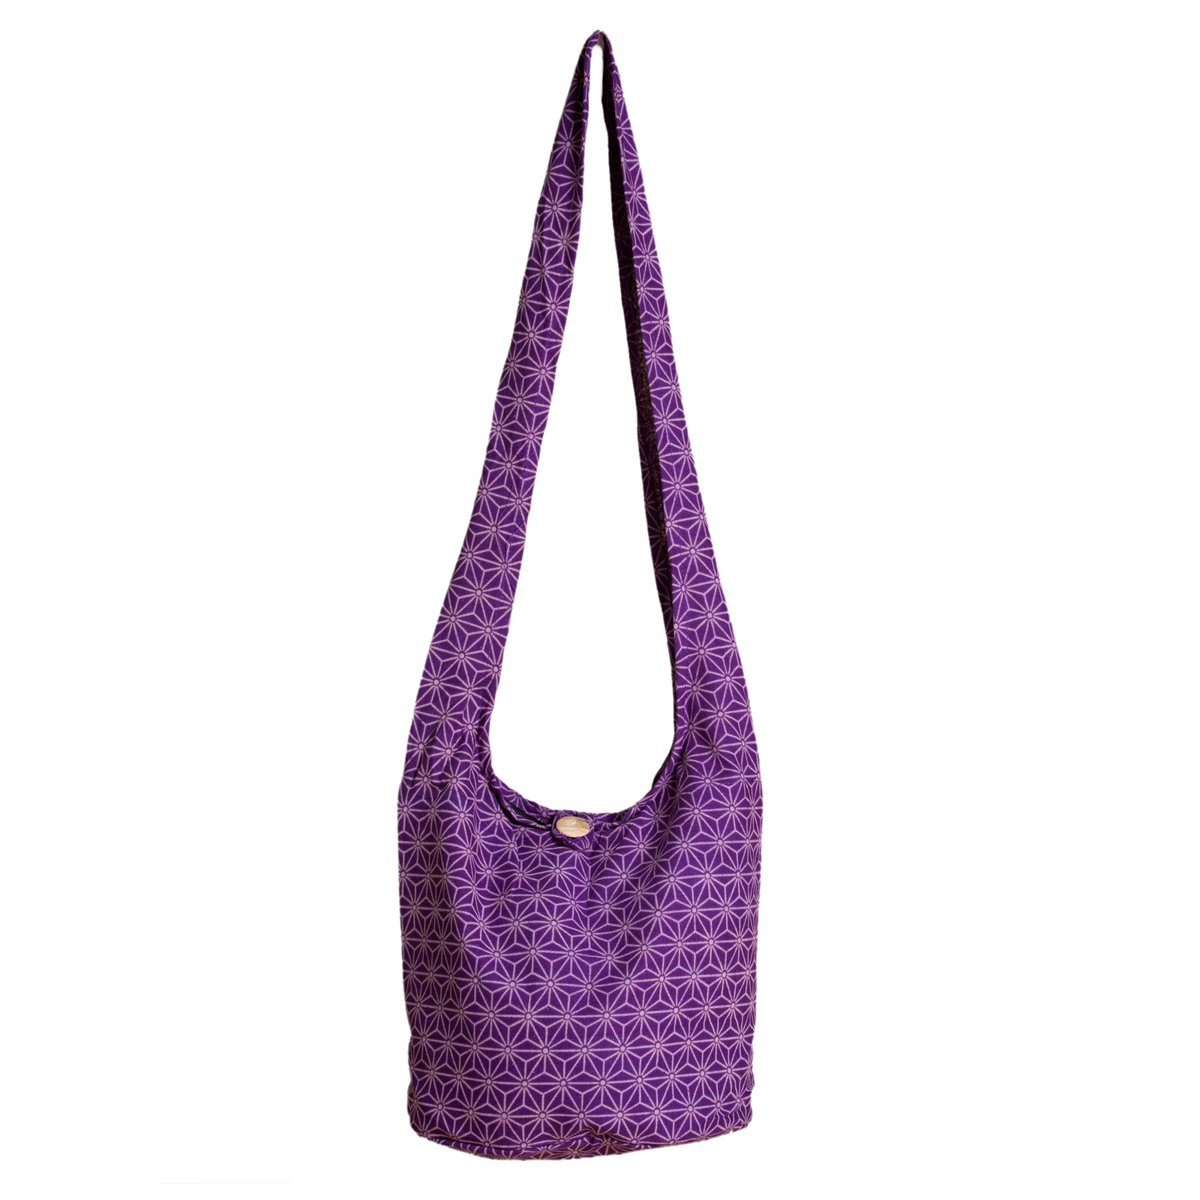 PANASIAM Schultertasche Geometrix Schulterbeutel aus 100% Baumwolle praktische Umhängetasche, In 2 Größen Beuteltasche auch als Wickeltasche und Handtasche geeignet Asanoha violett